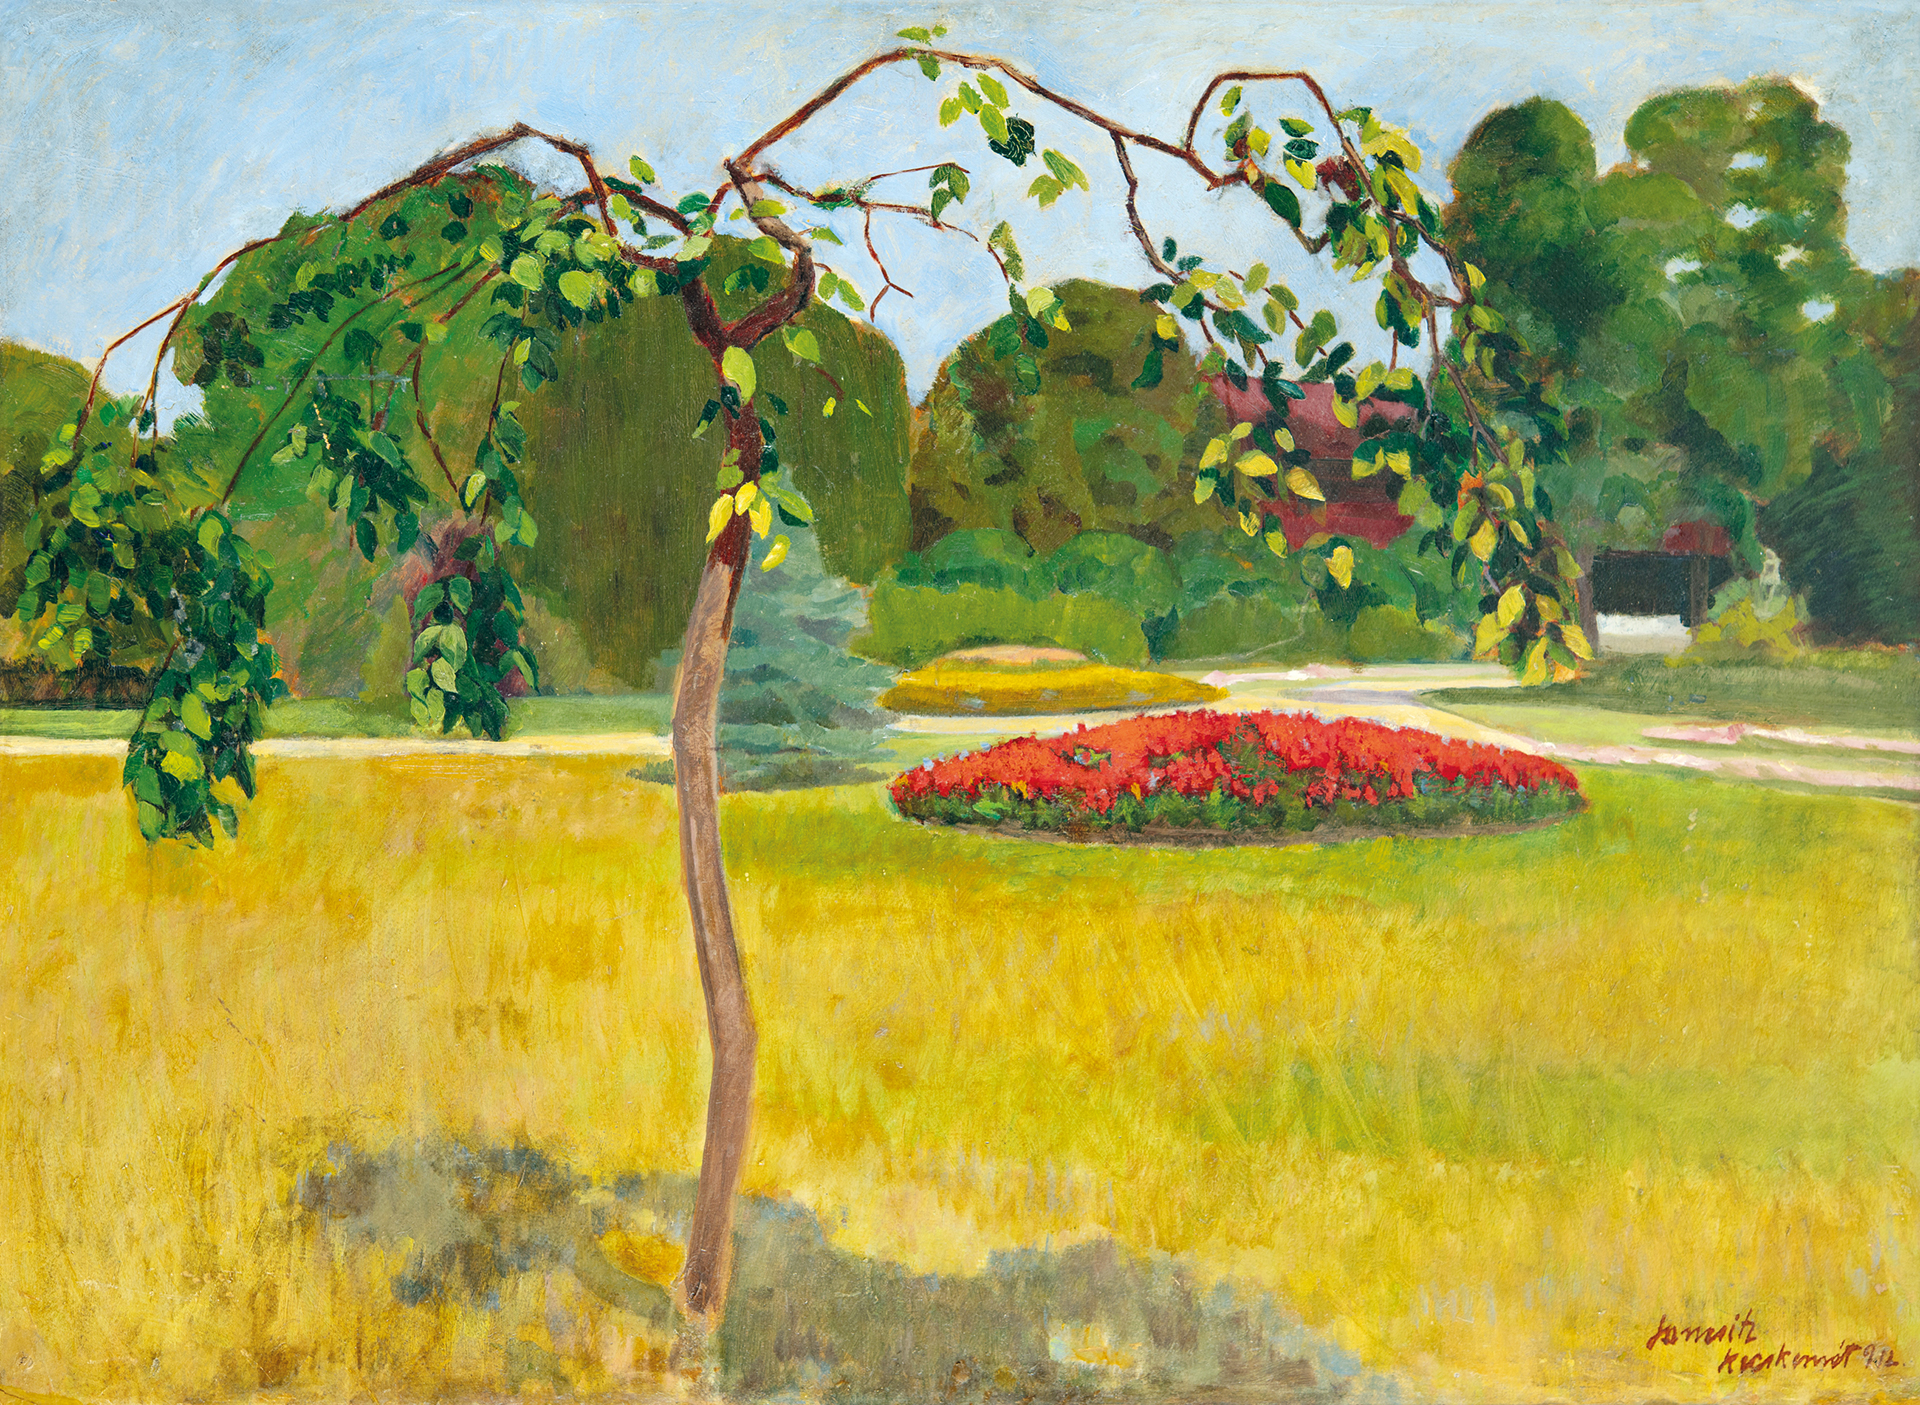 Janesitz Henrik (1889-1947) Kecskeméti műkert, 1912